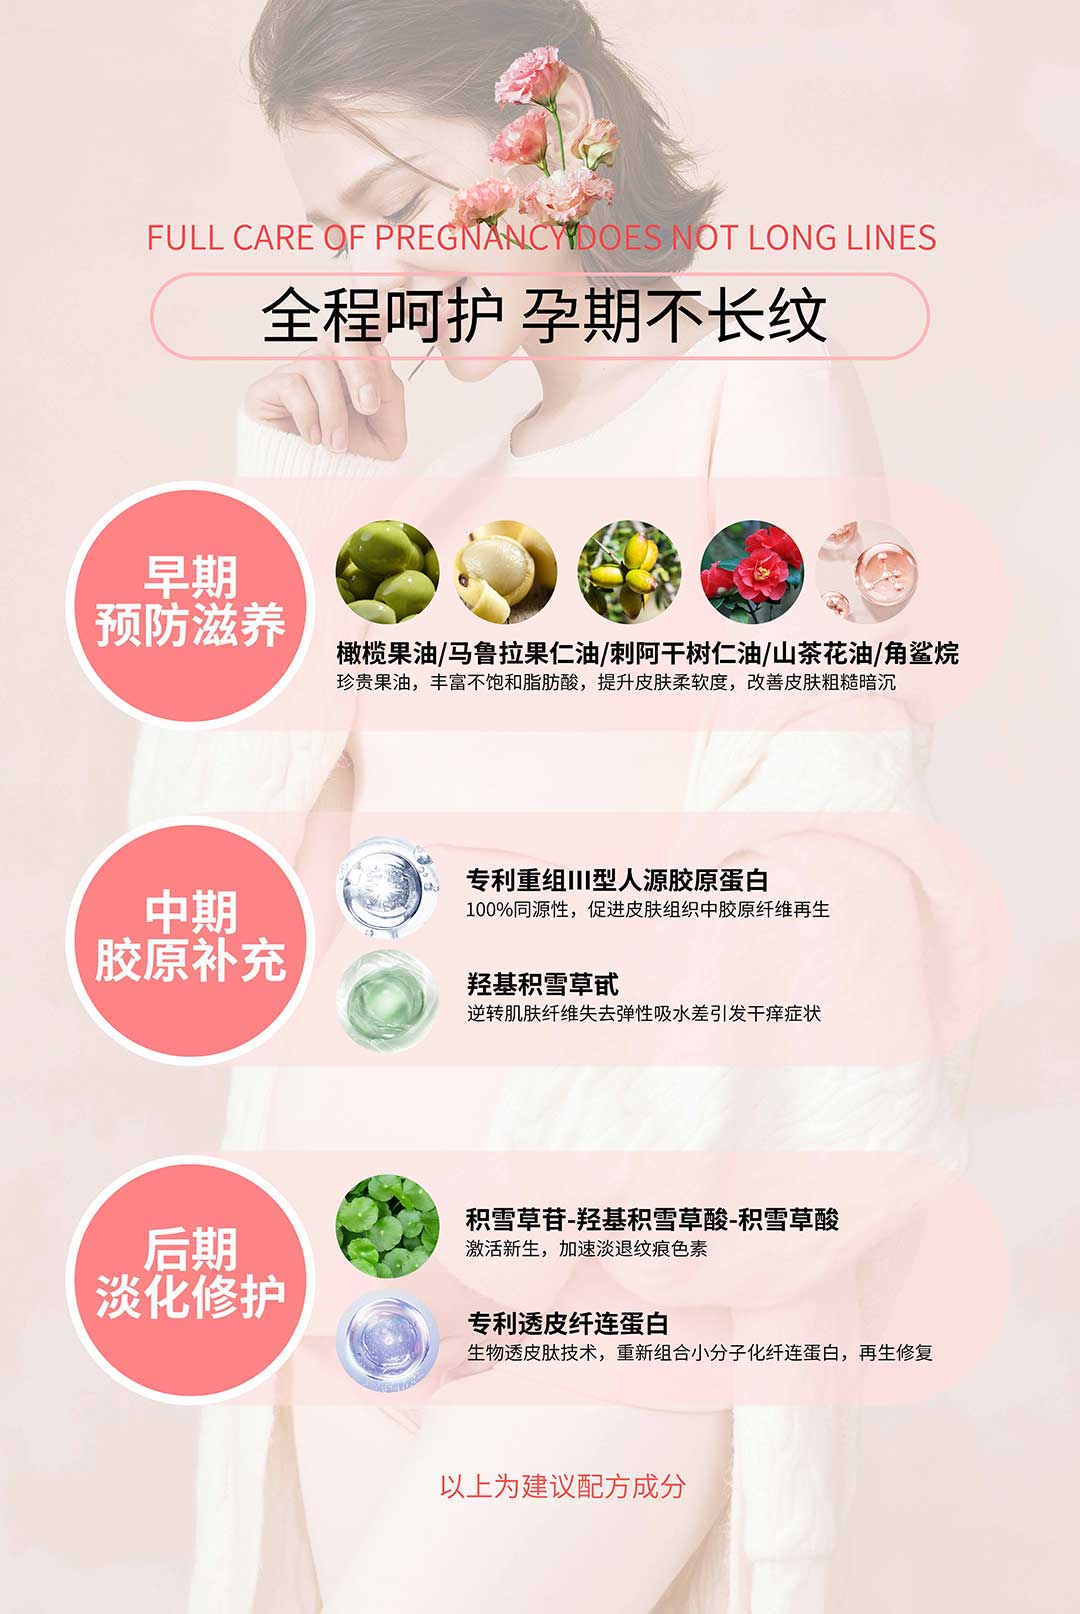 广州天源生物-全孕期守护，幸福不留印记